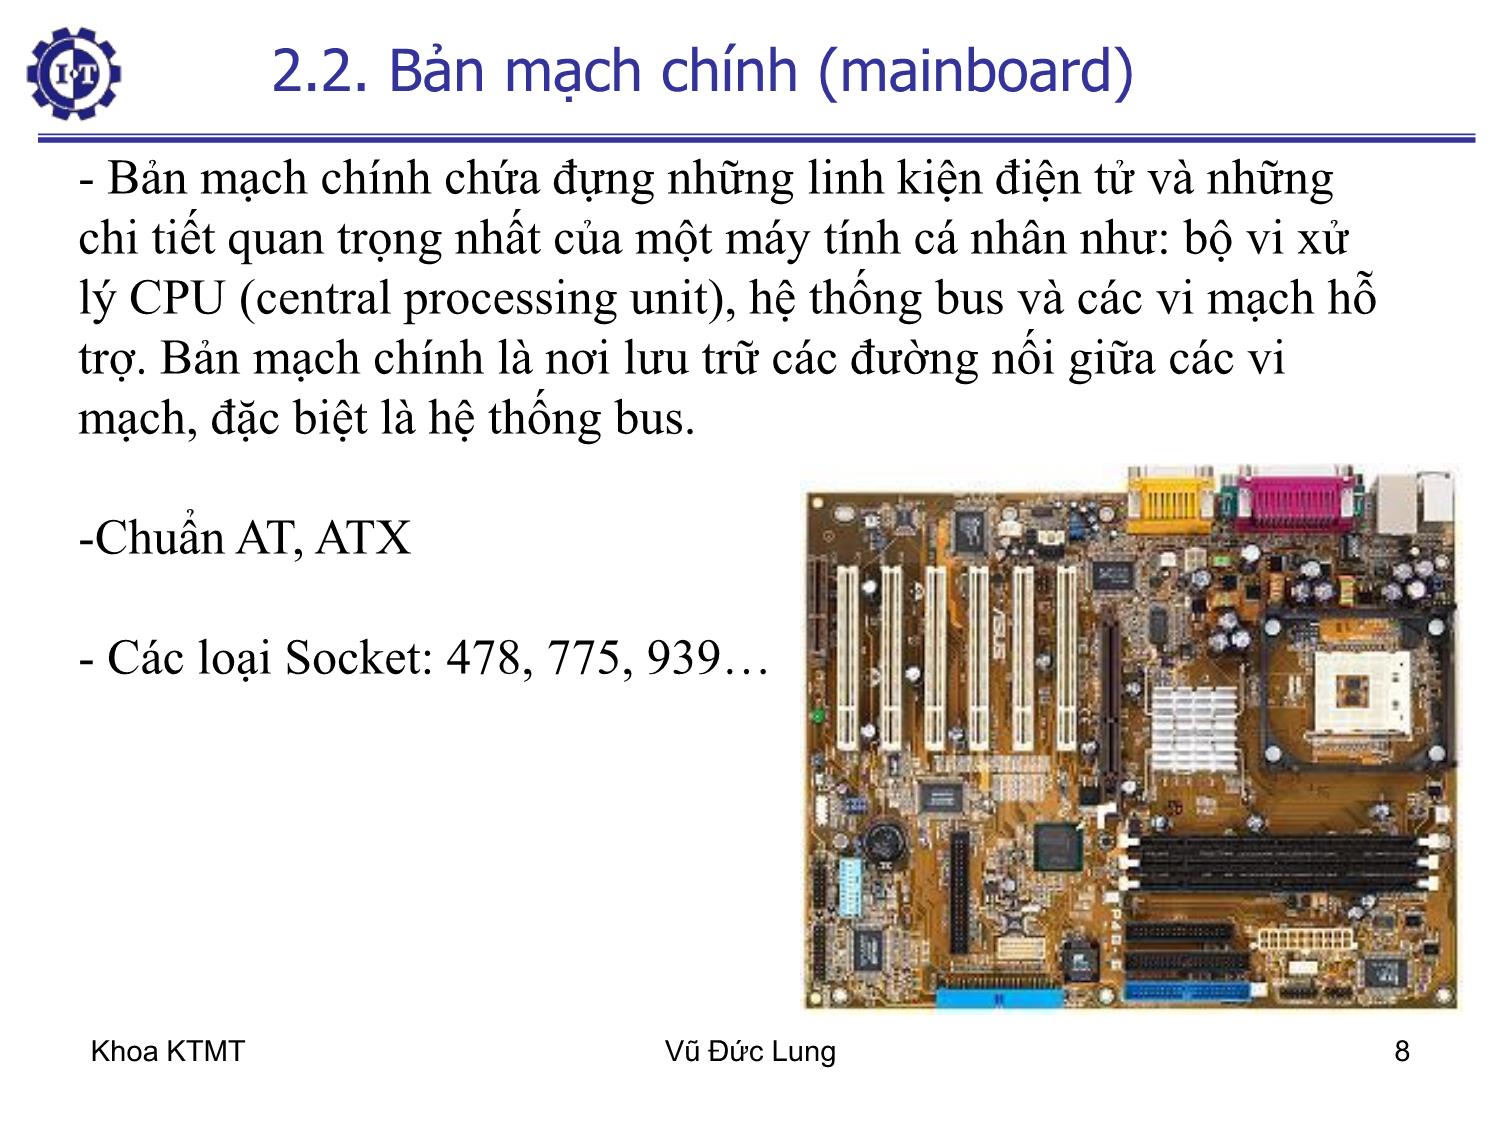 Bài giảng Kiến trúc máy tính 1 - Chương 2: Các bộ phận cơ bản của máy tính - Vũ Đức Lung trang 8